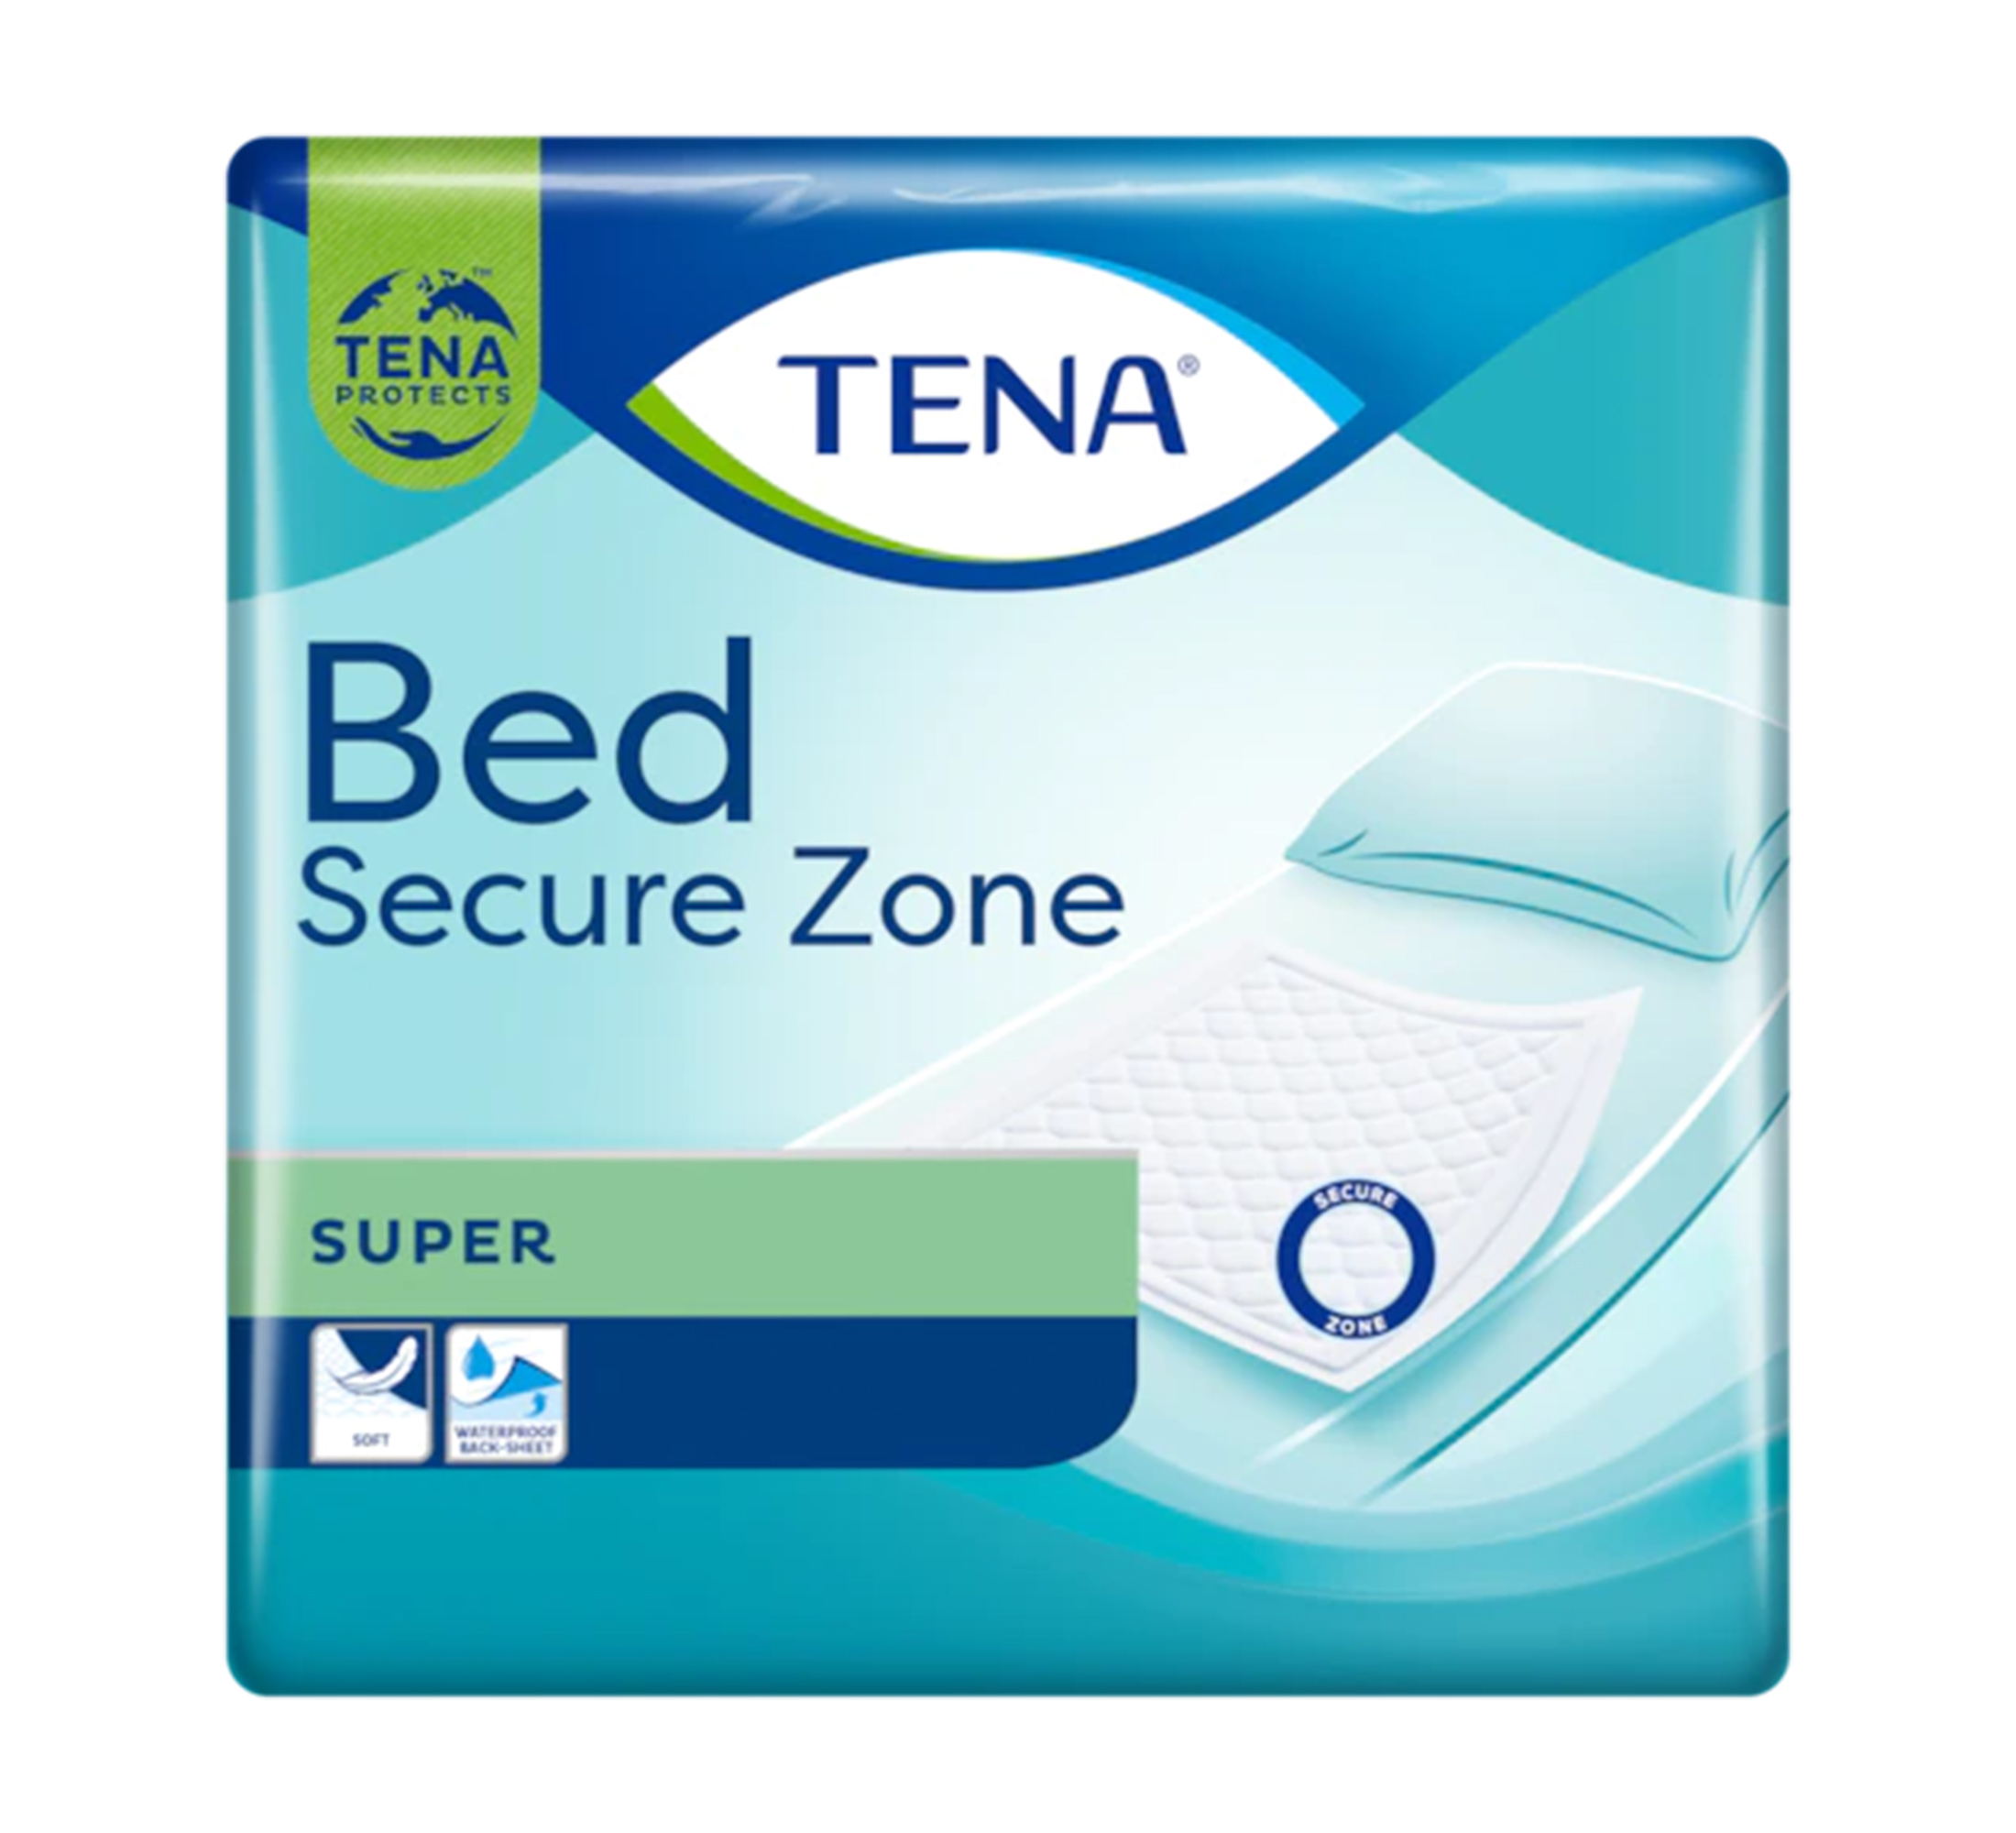 TENA Bed Secure Zone Super Inkontinenz-Schutzunterlagen, 60x90cm, 35 Stk.